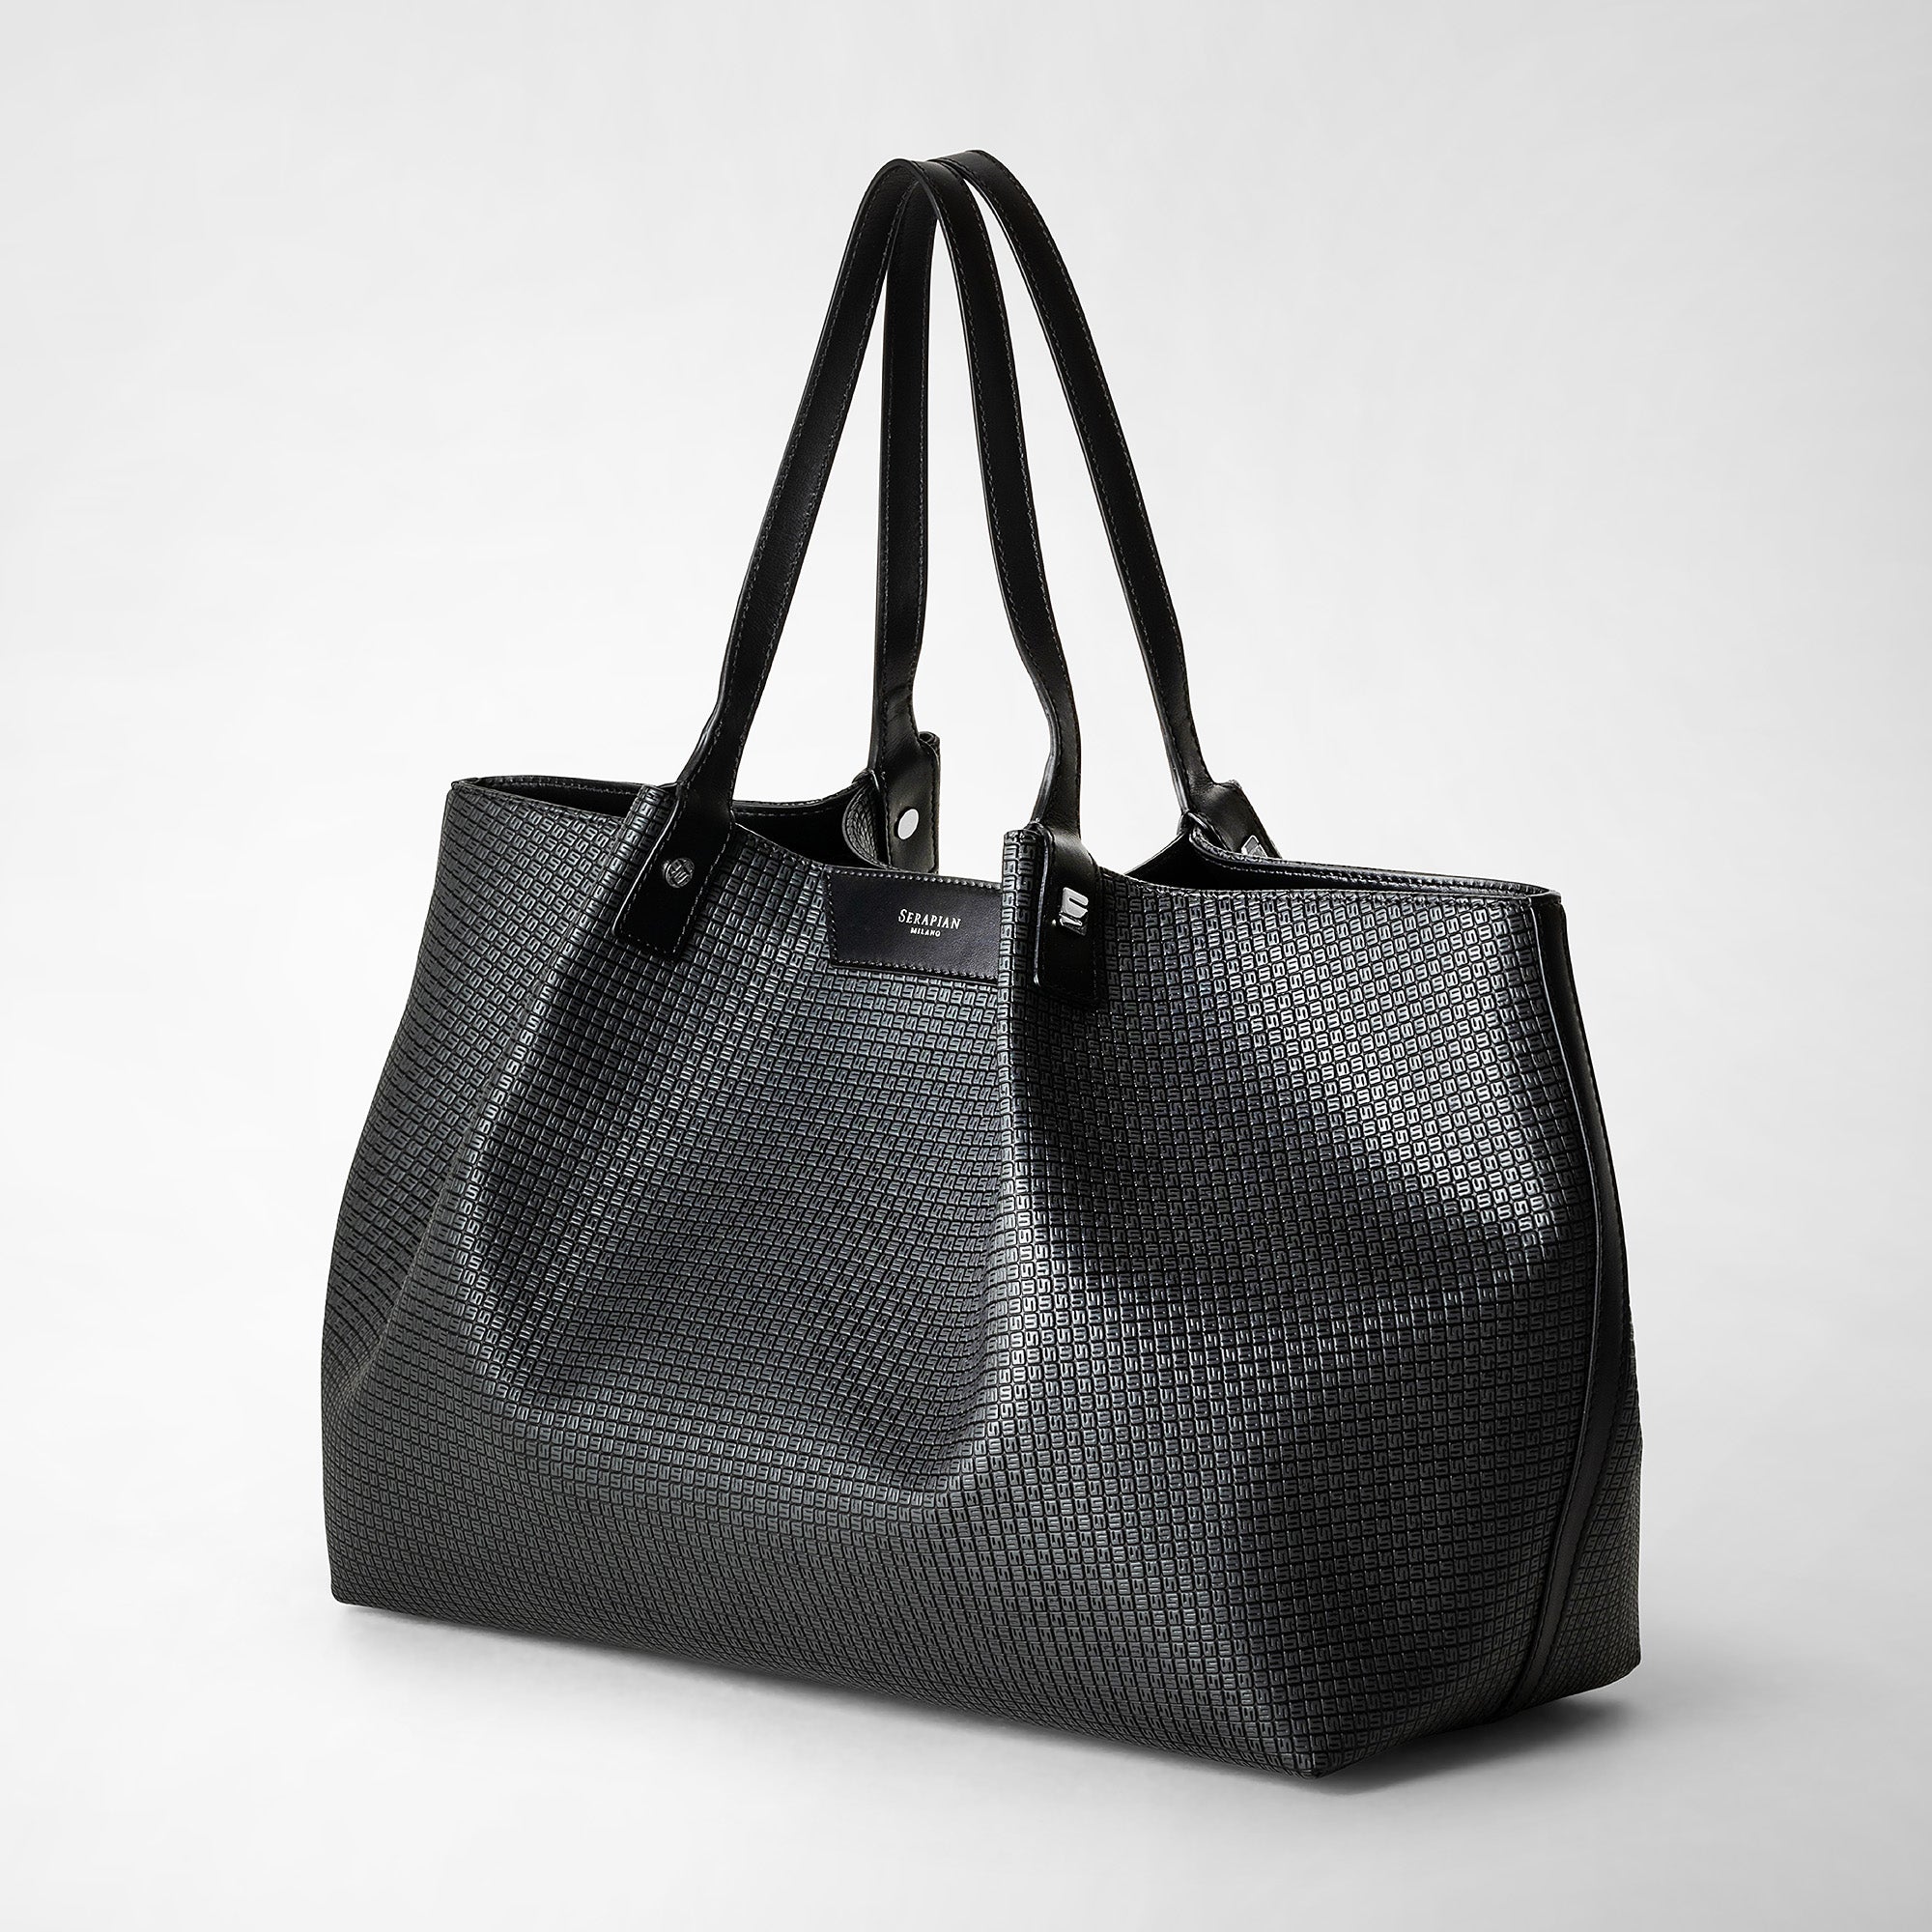 Secret tote bag in stepan asphalt gray and black – Serapian 